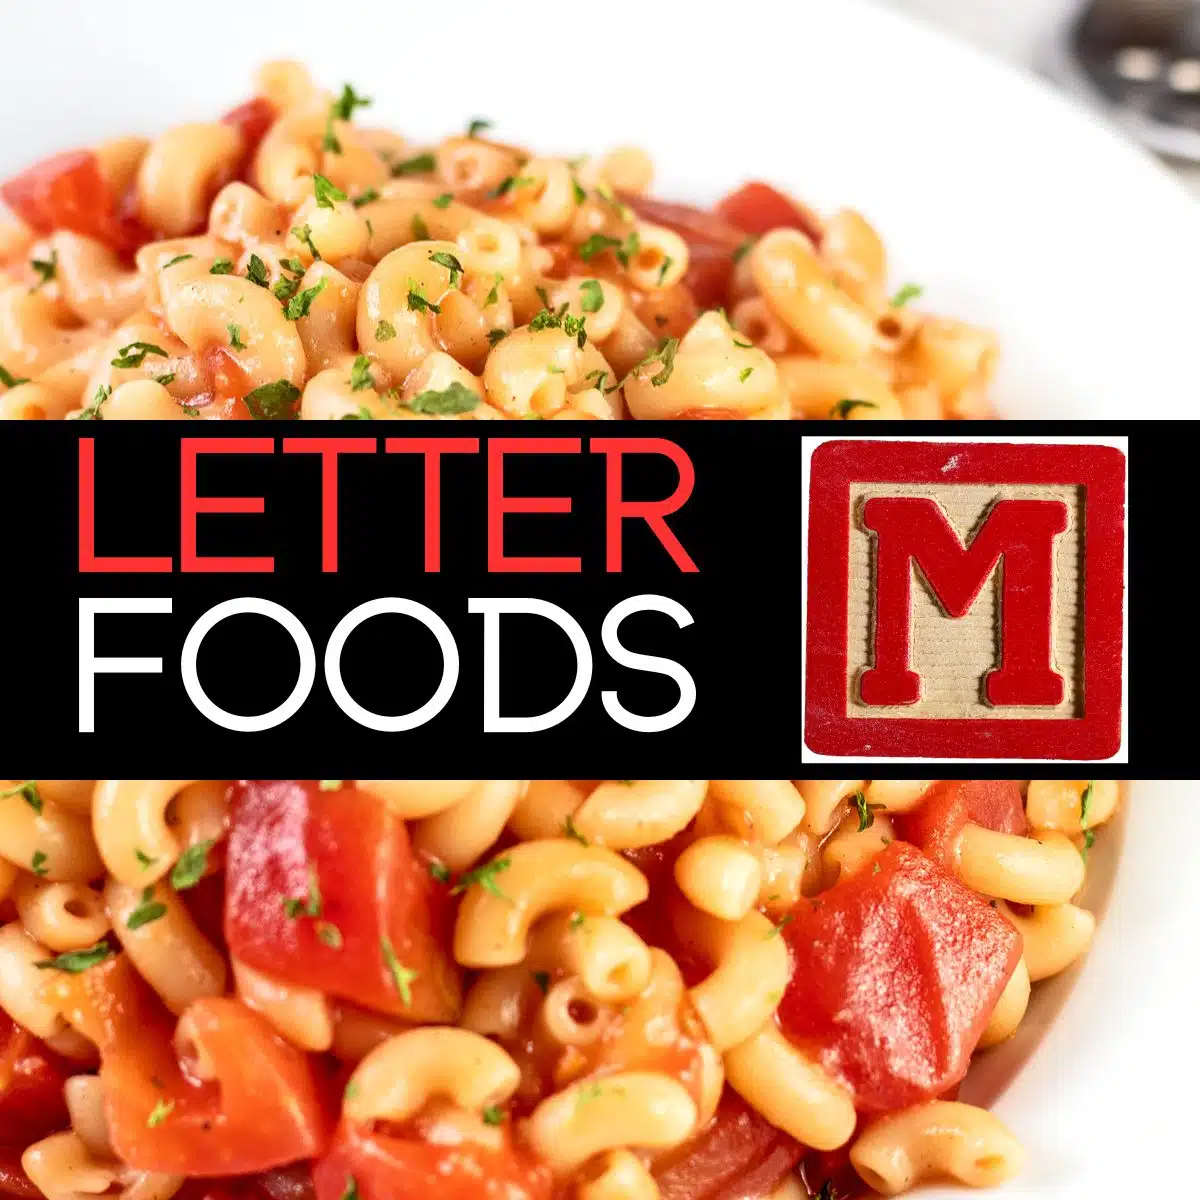 Квадратно изображение за храни, които започват с буквата М, показващо макарони.